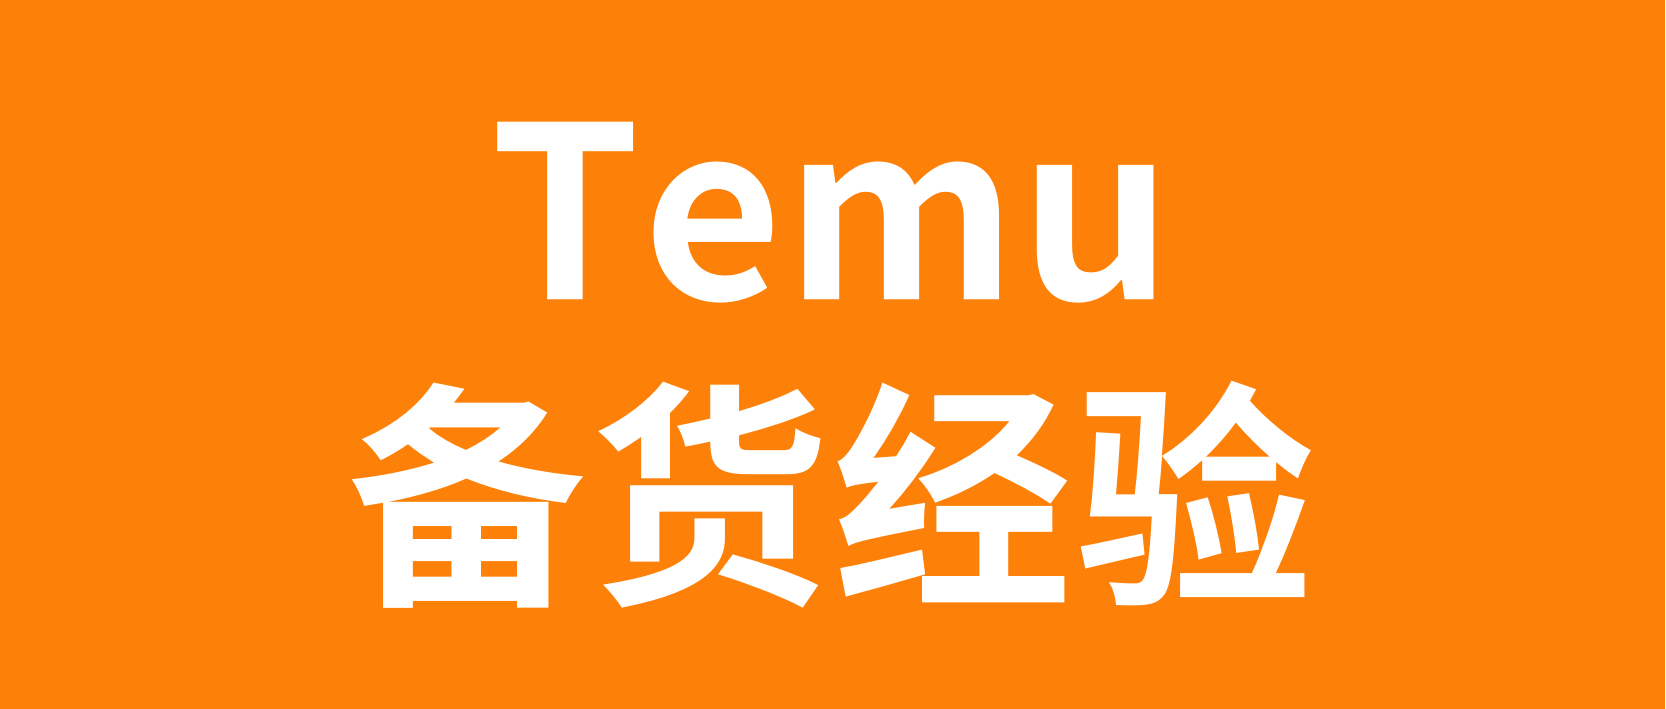 Temu商家返单备货原则及数量标准建议